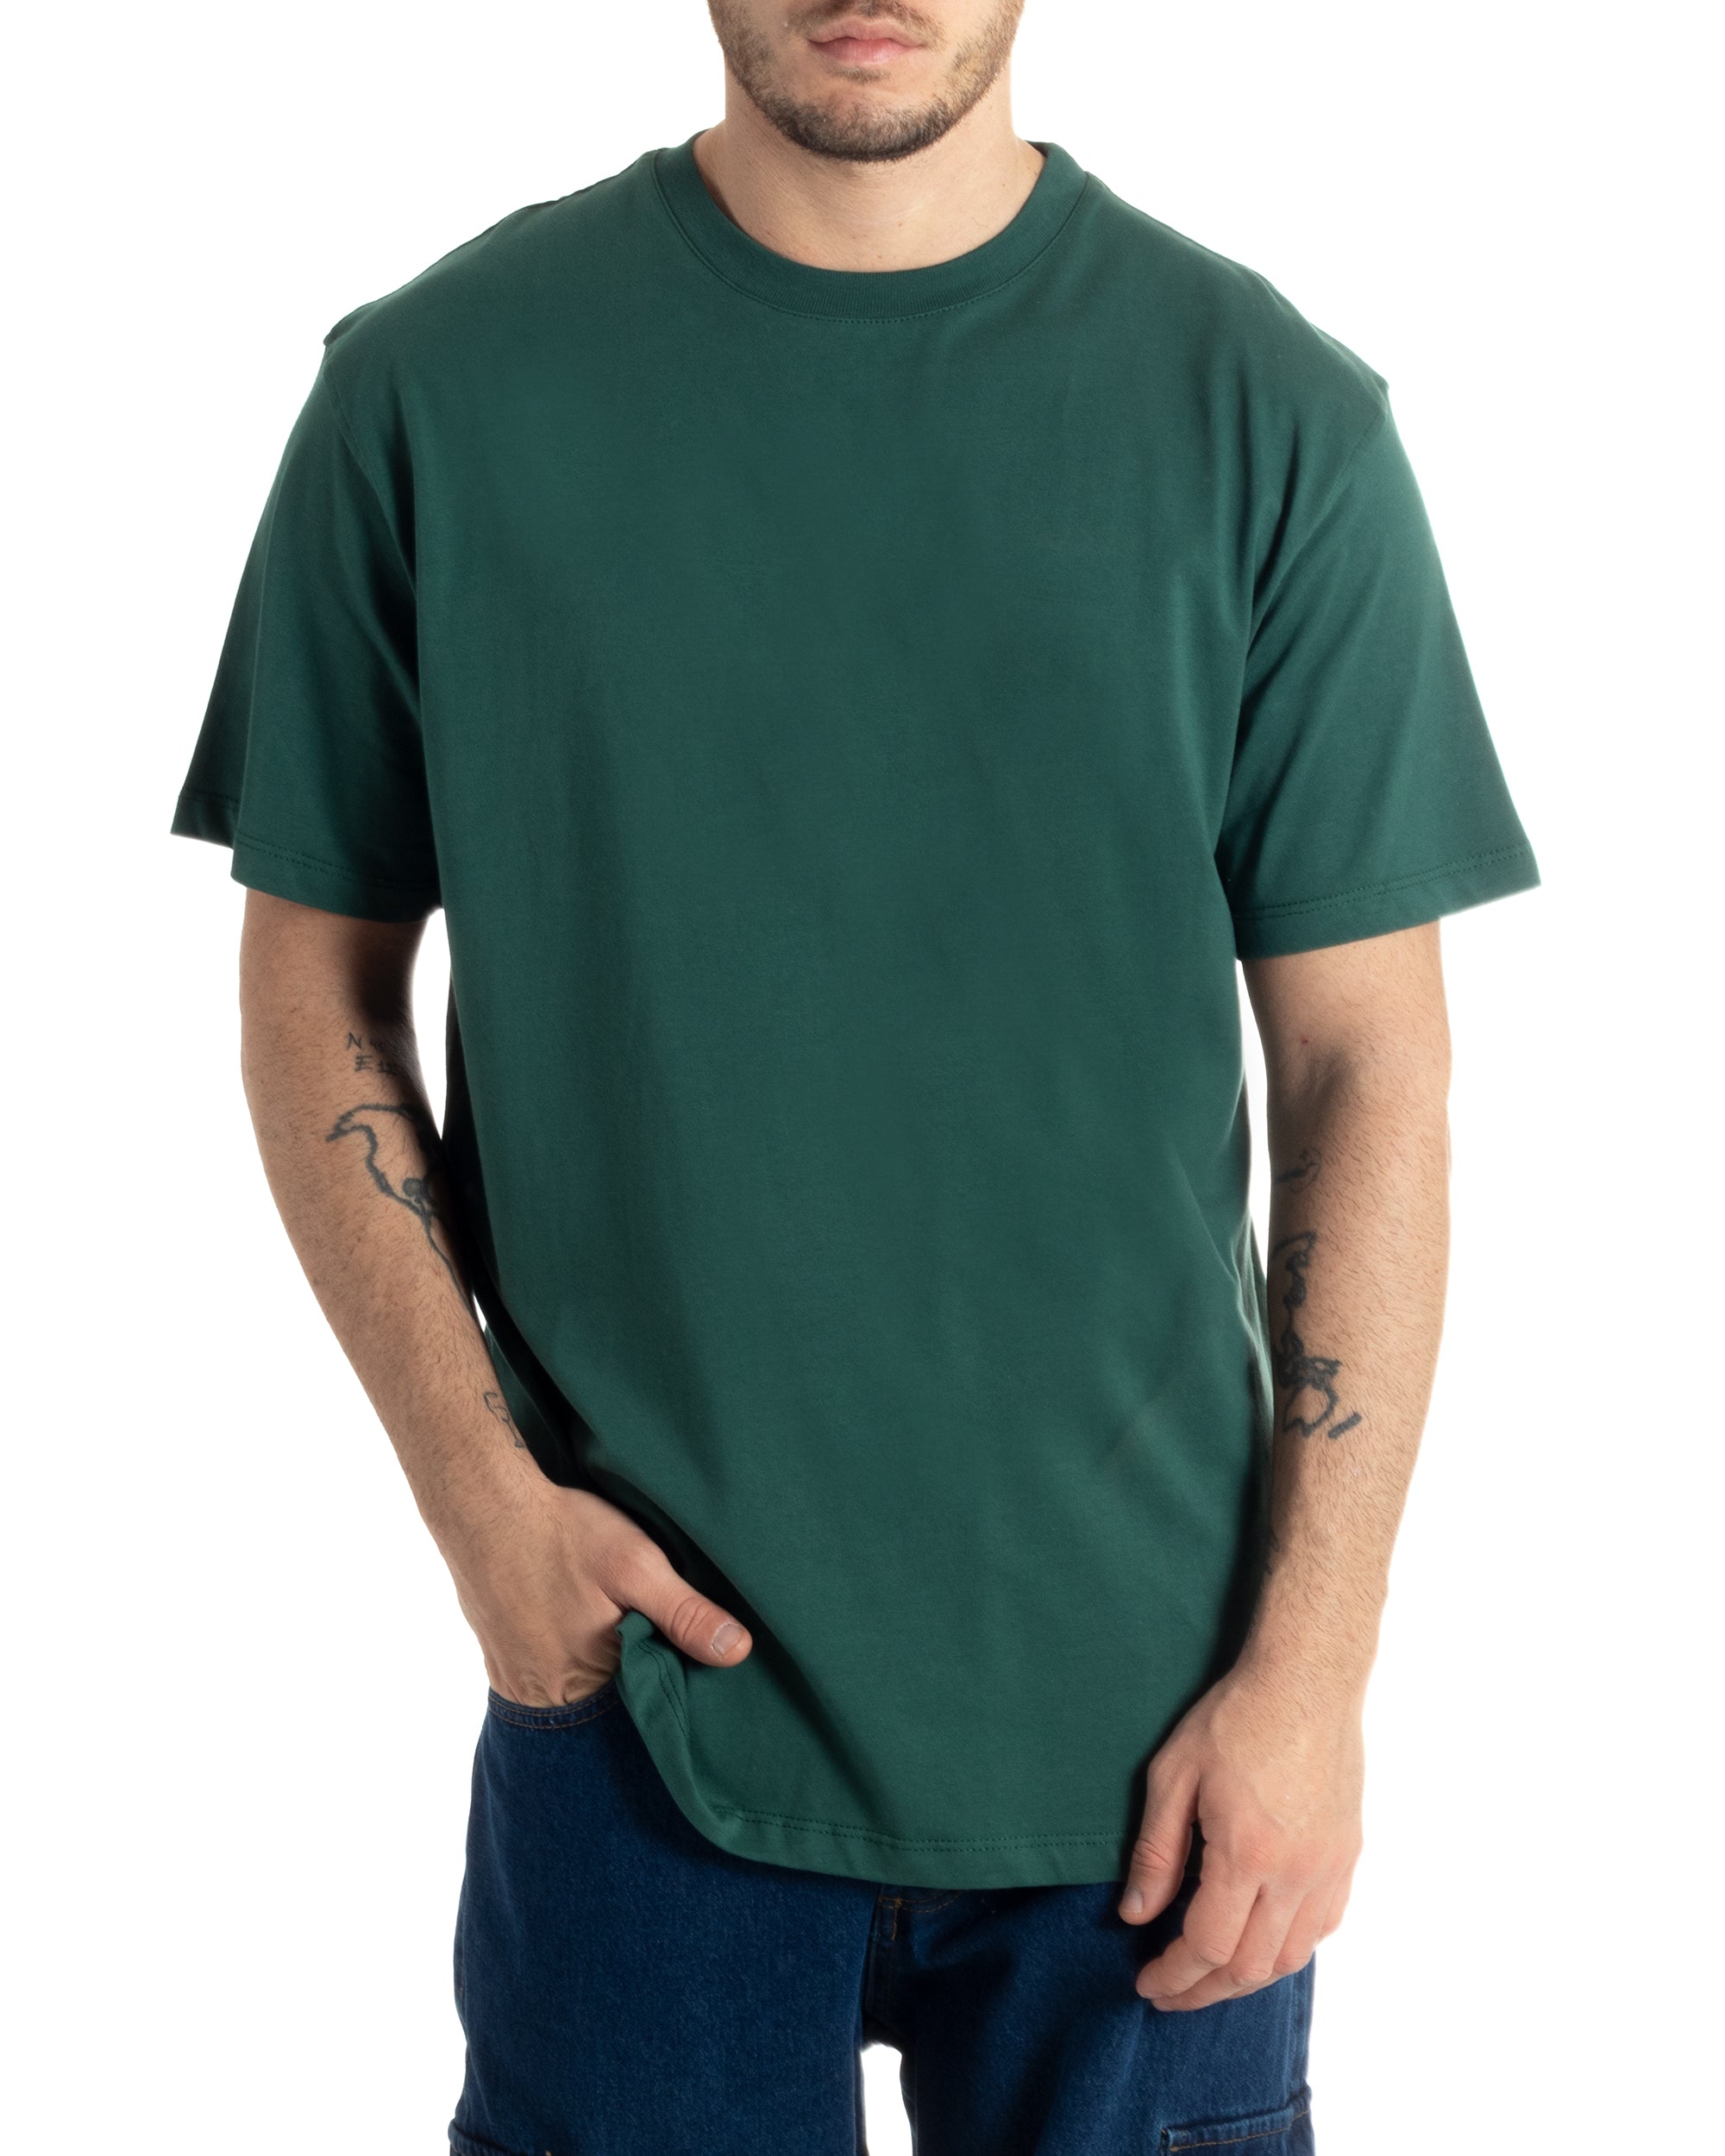 T-shirt Uomo Cotone Basic Tinta Unita Verde Girocollo Casual Gola Alta GIOSAL-TS2980A